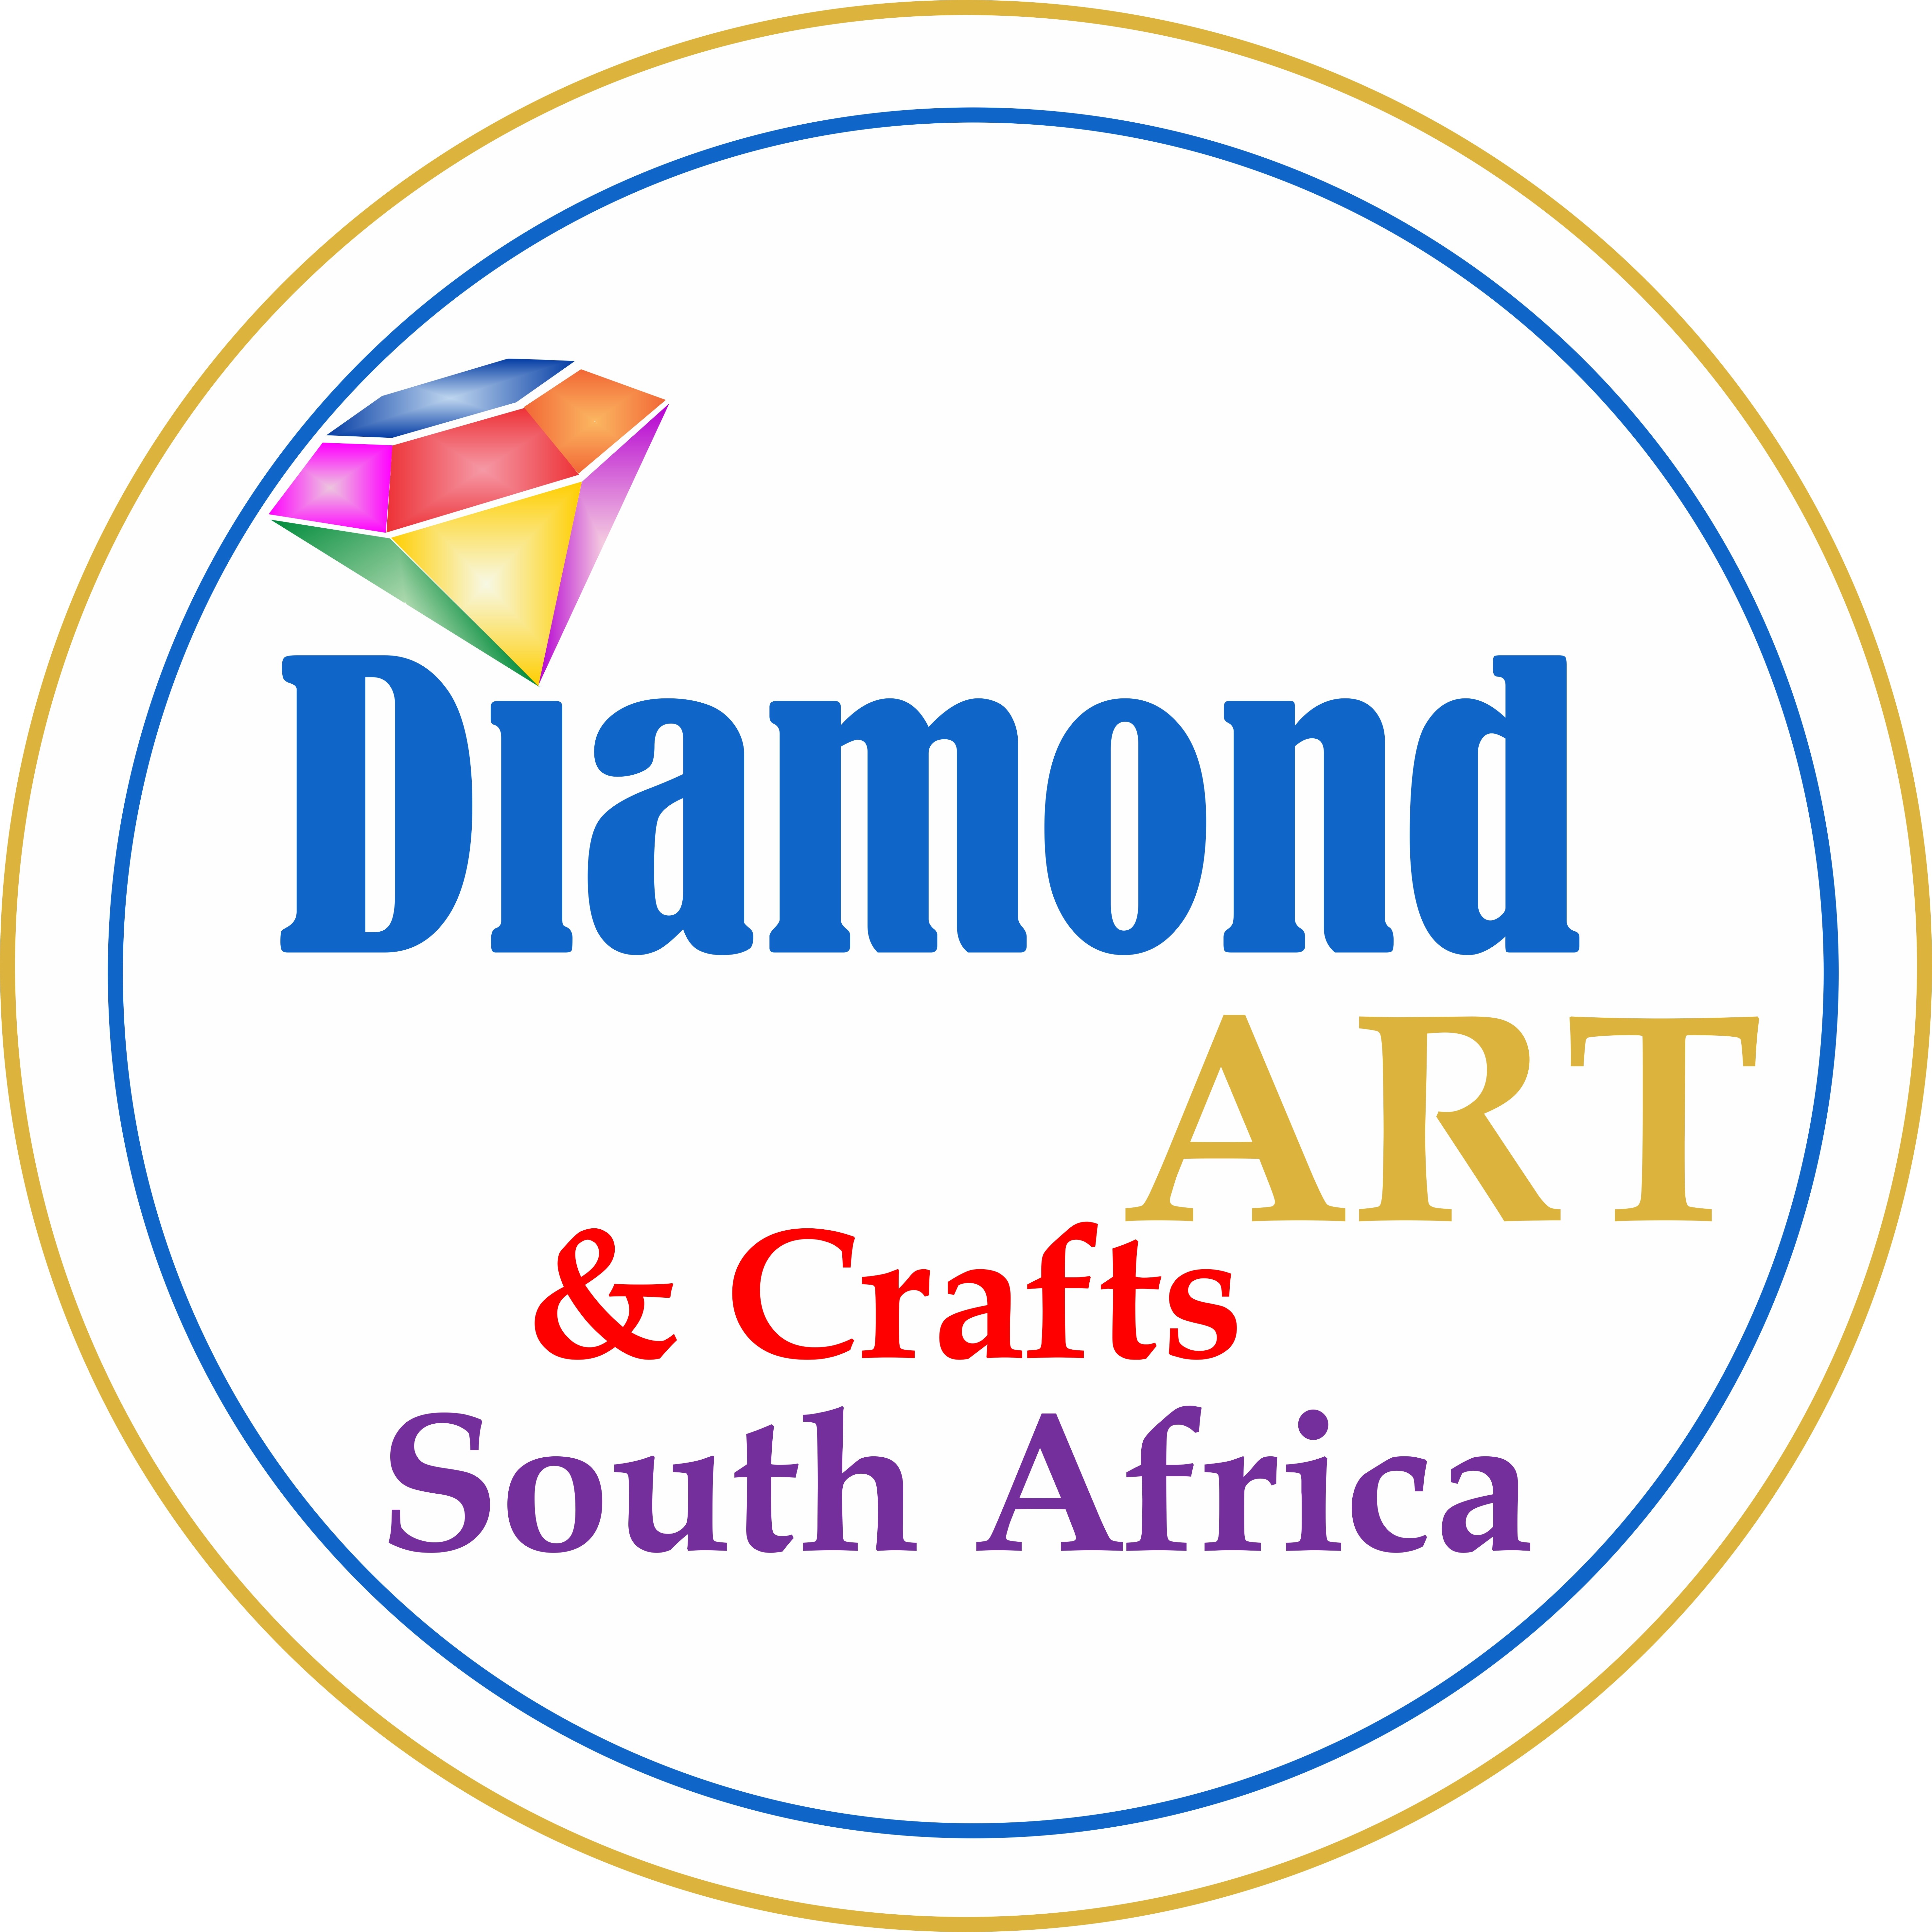 Diamond Art SA